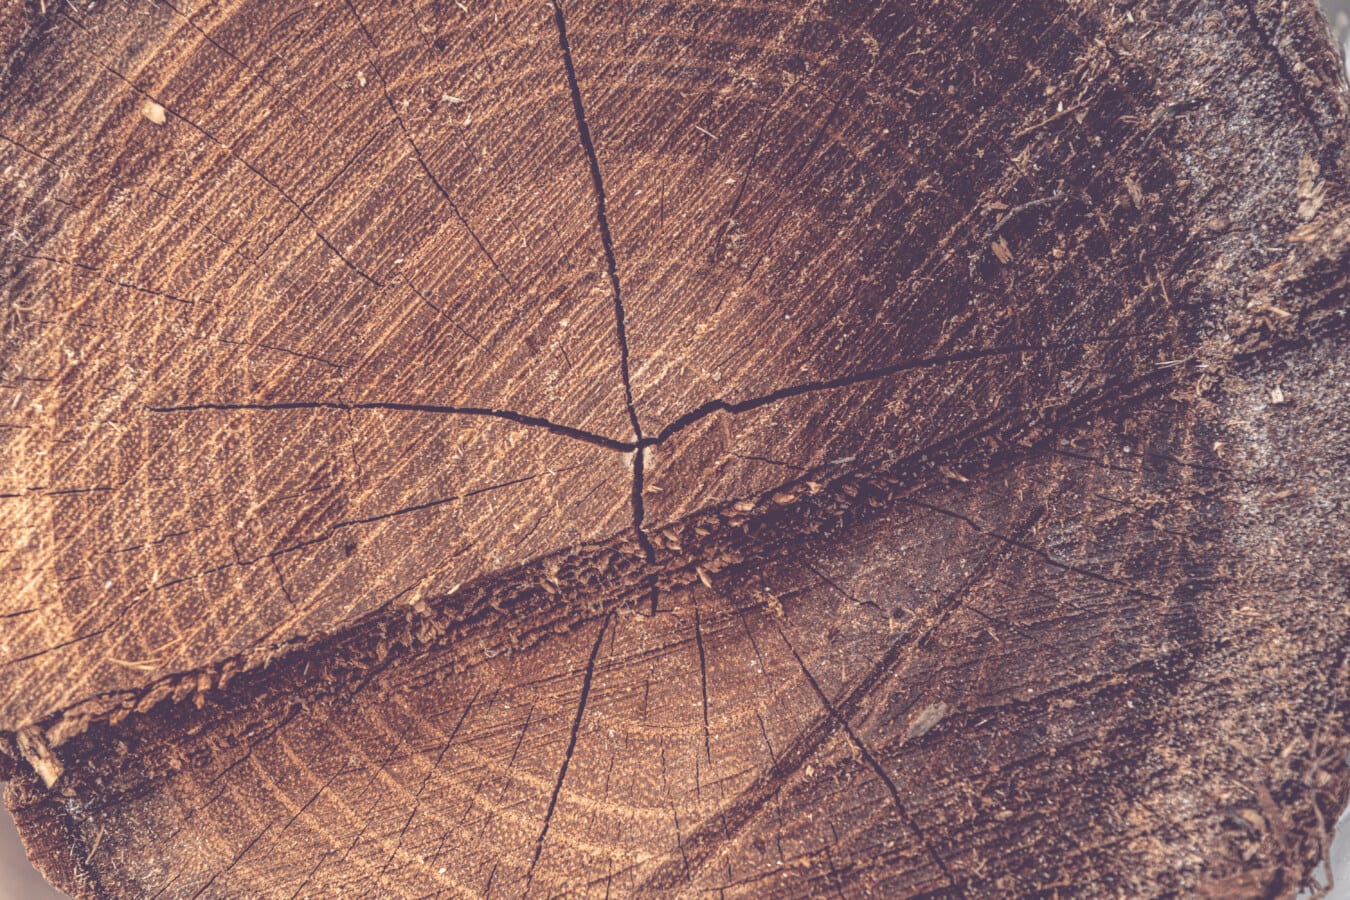 průřez, kmen stromu, tvrdé dřevo, textura, vzor, drsné, staré, špinavý, dřevo, povrch